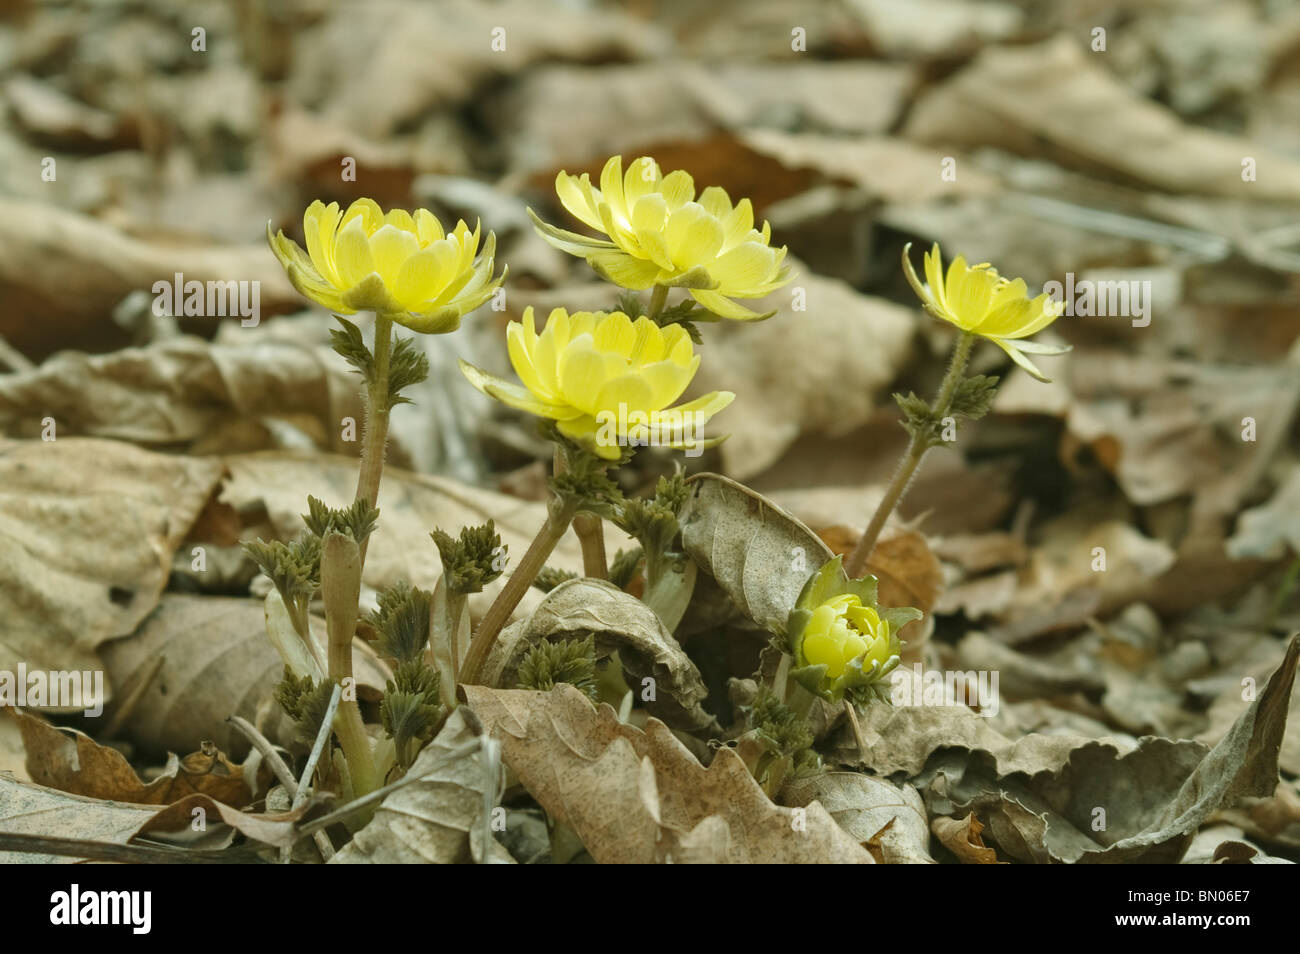 Amur adonis flowers (Adonis amurensis) Stock Photo